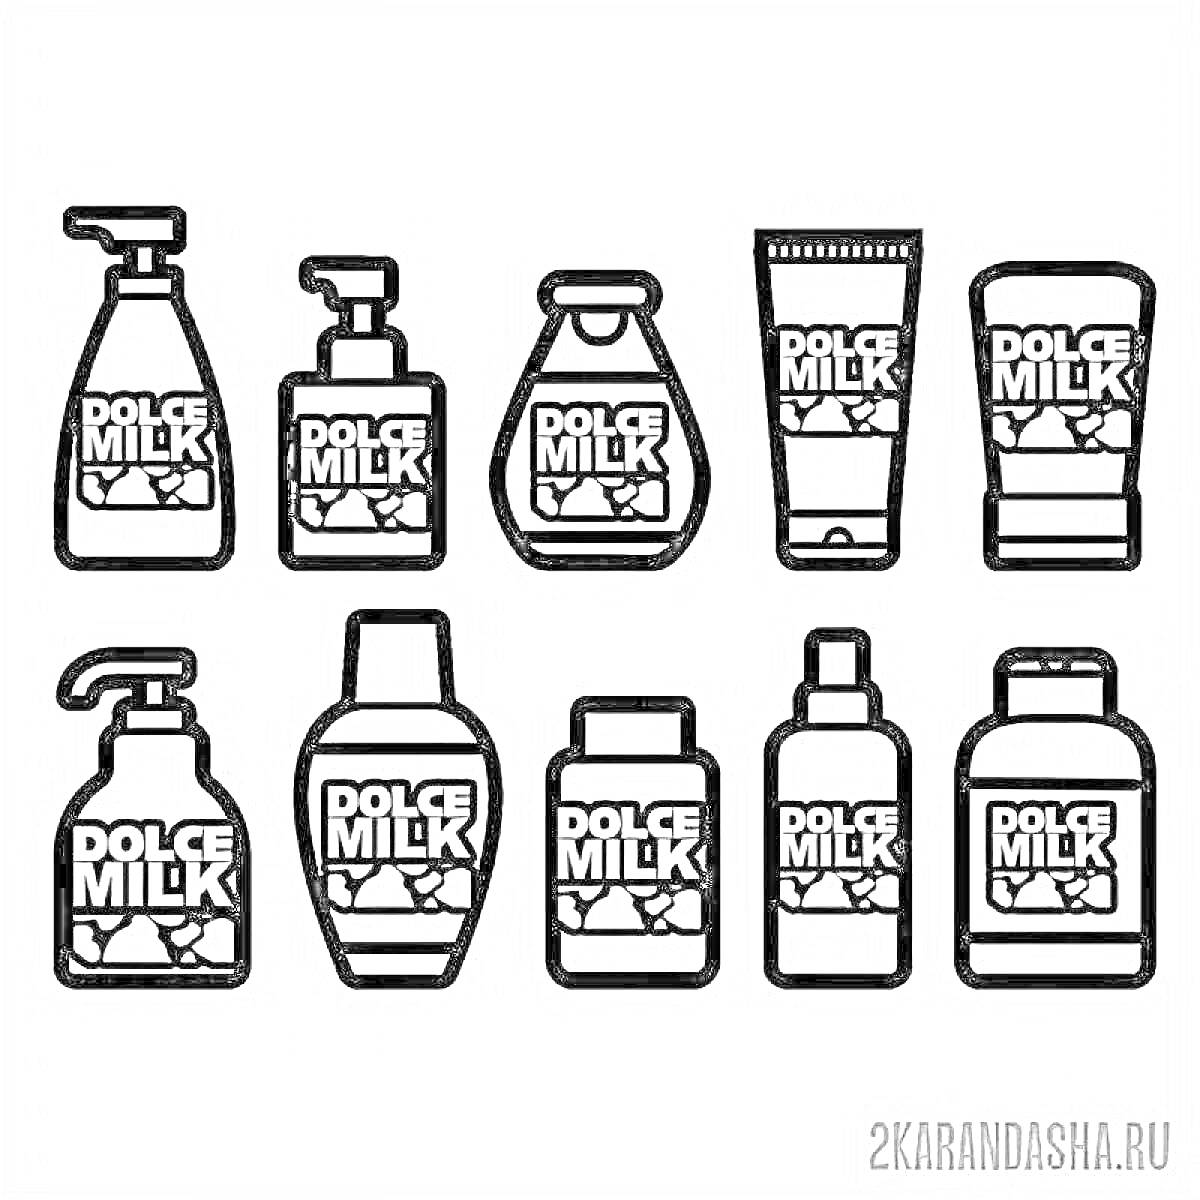 Раскраска бутылочки и тюбики с различными формами логотипа Dolce Milk